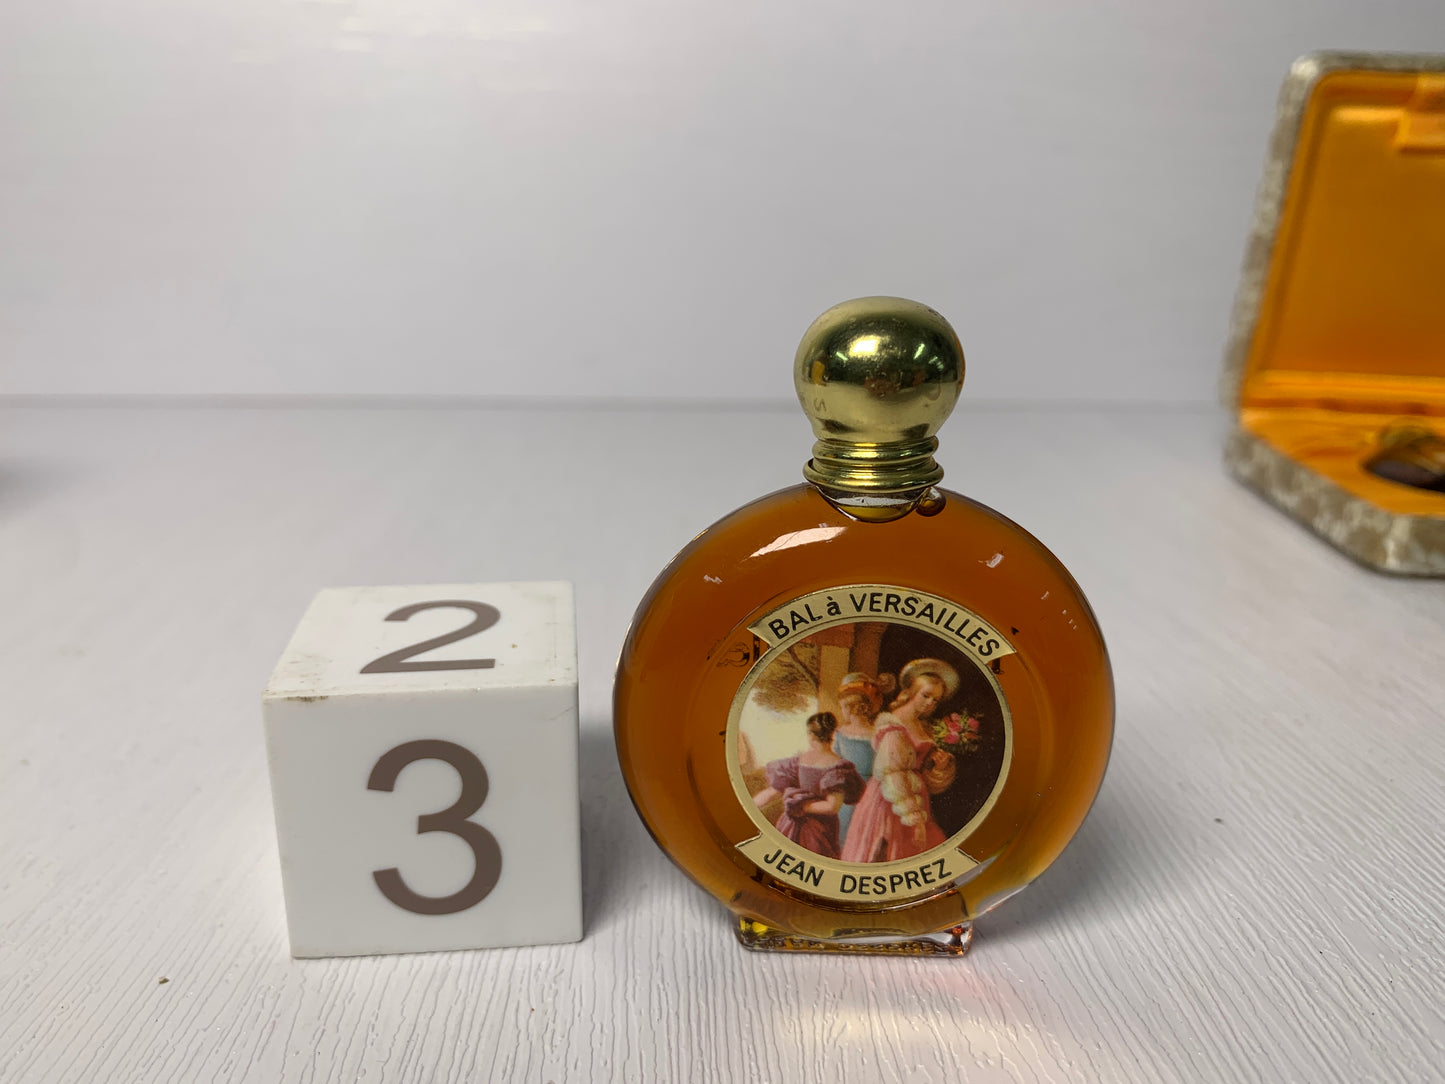 Rare Jean Desprez bal a versailles 7ml 15ml  parfum perfume - 12FEB23